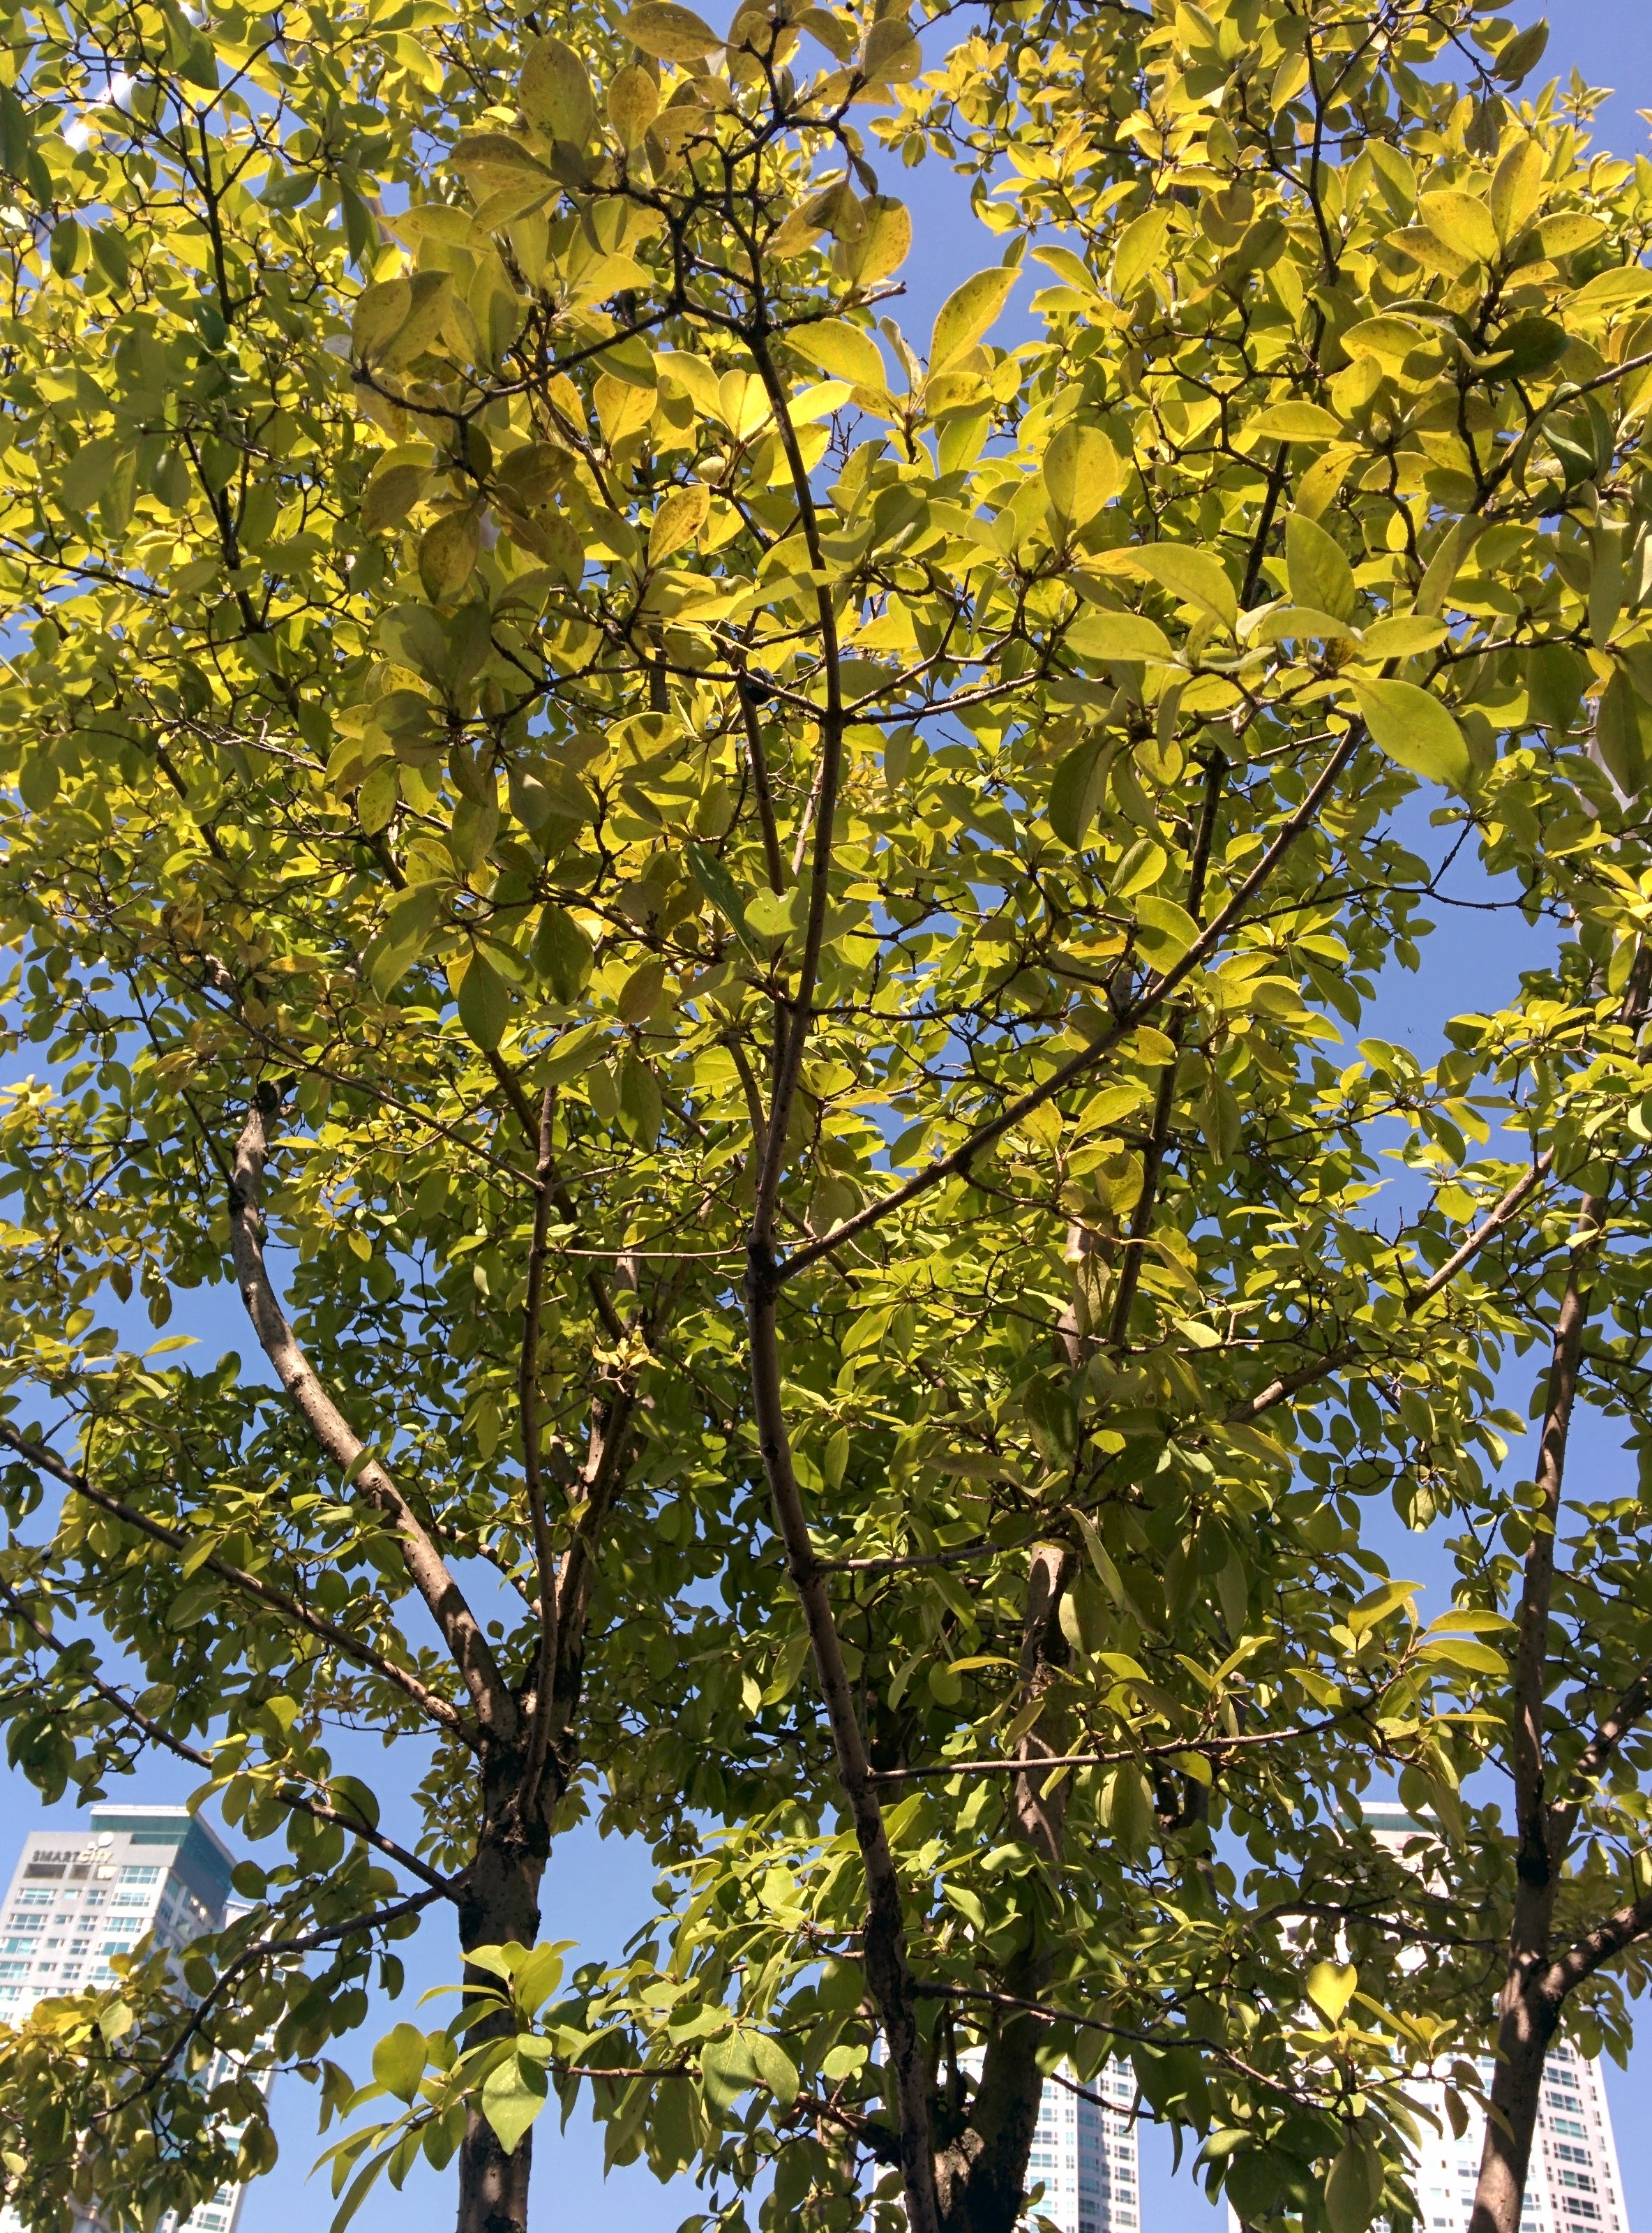 IMG_20151006_124616.jpg 블루베리를 닮은 검은색 열매가 열린 가로수, 이팝나무